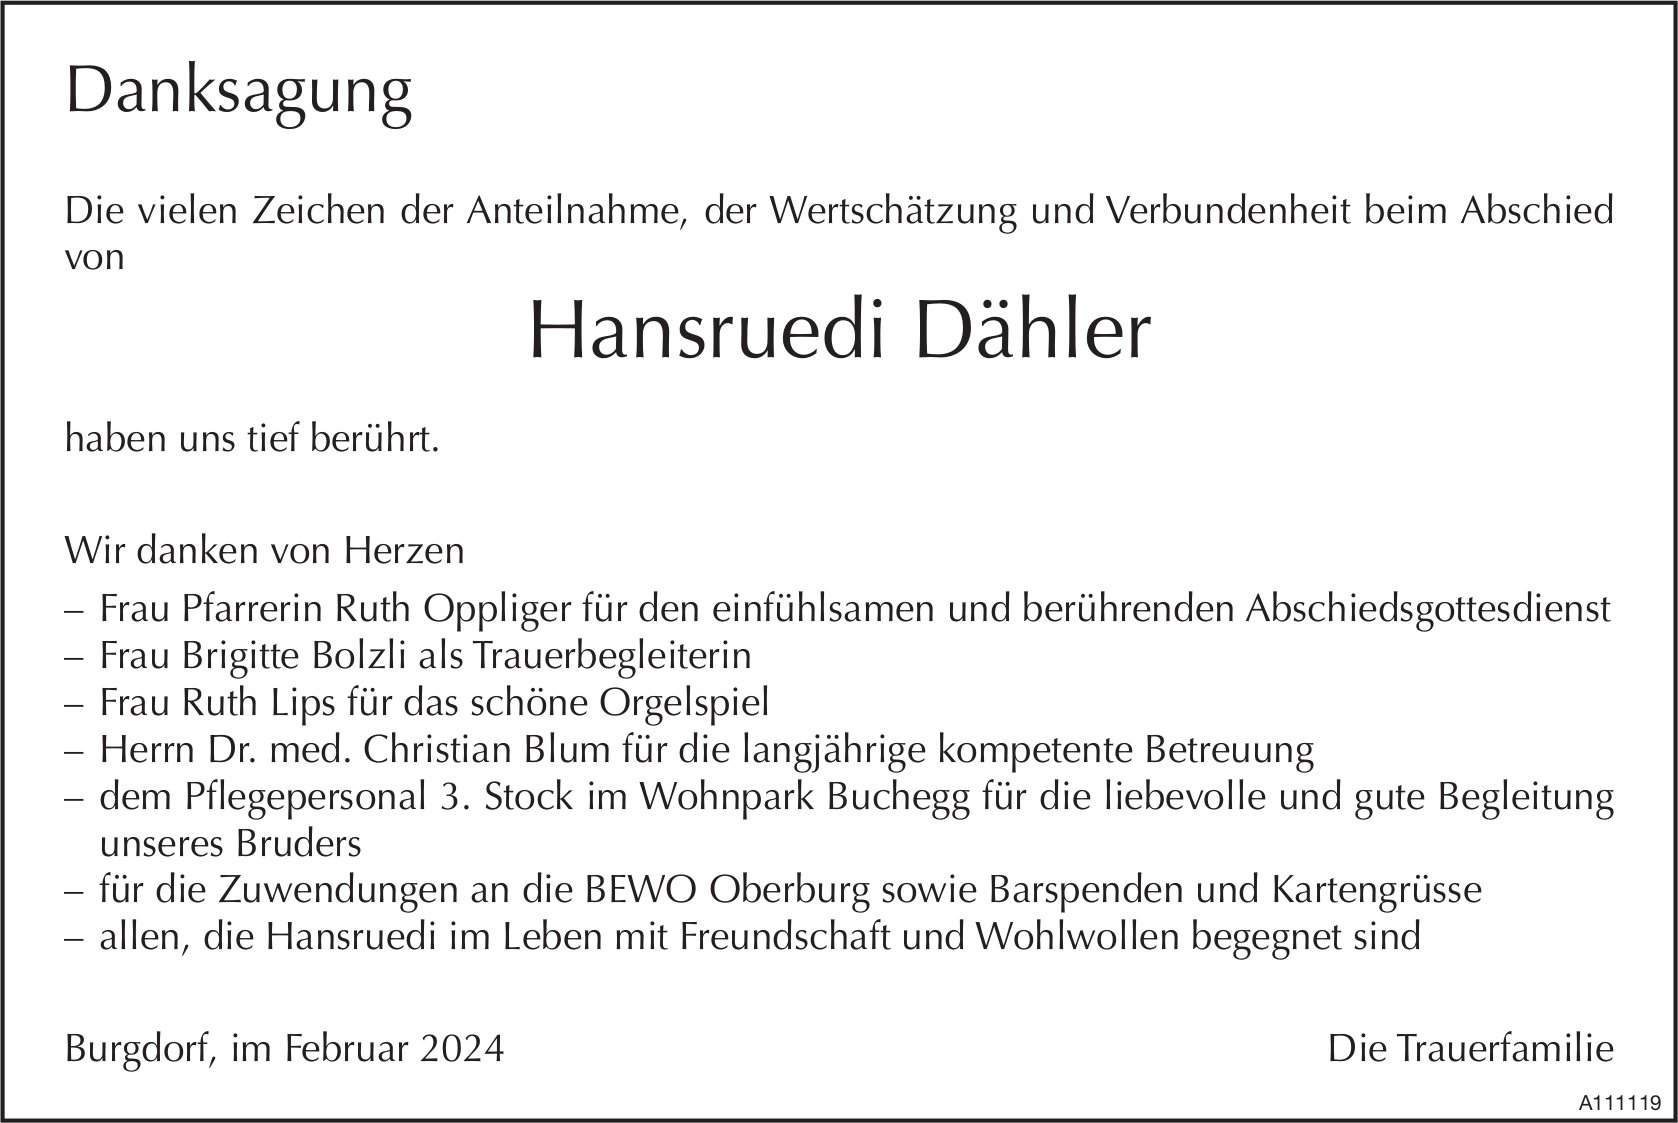 Hansruedi Dähler, im Februar 2024 / DS